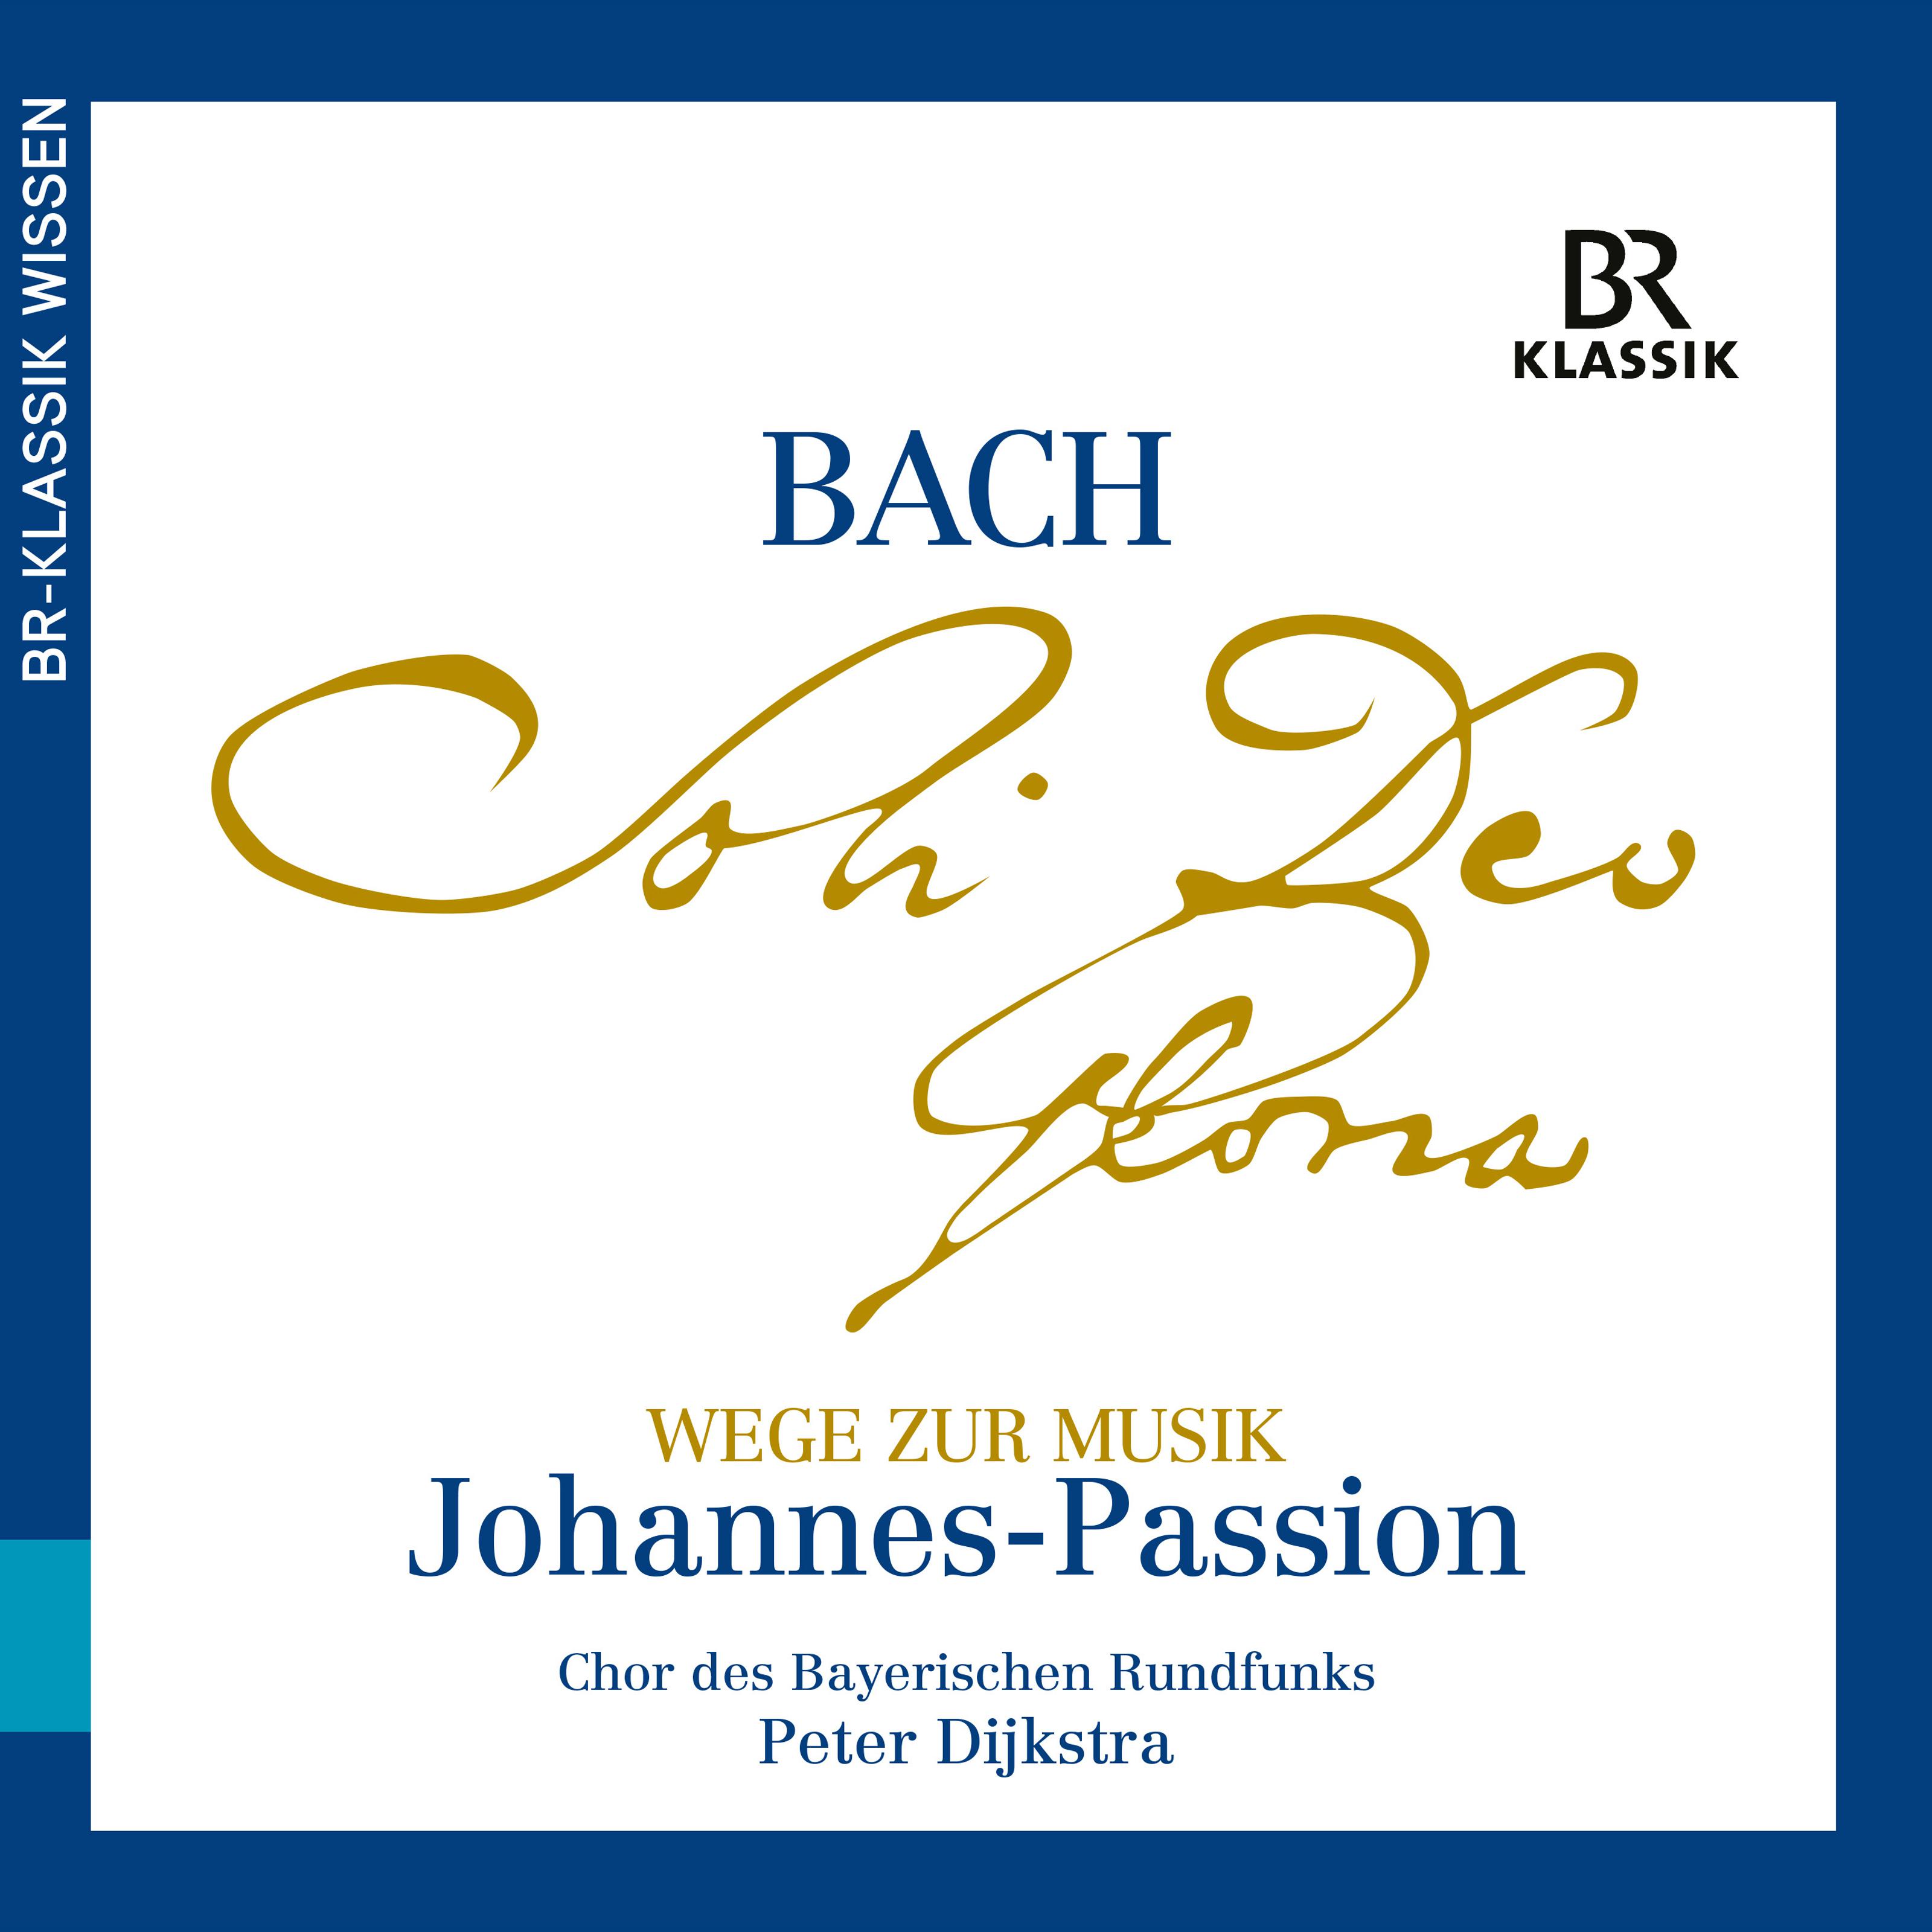 Christian Baumann - Wege zur Musik aus der Johannes-Passion, Teil 1 